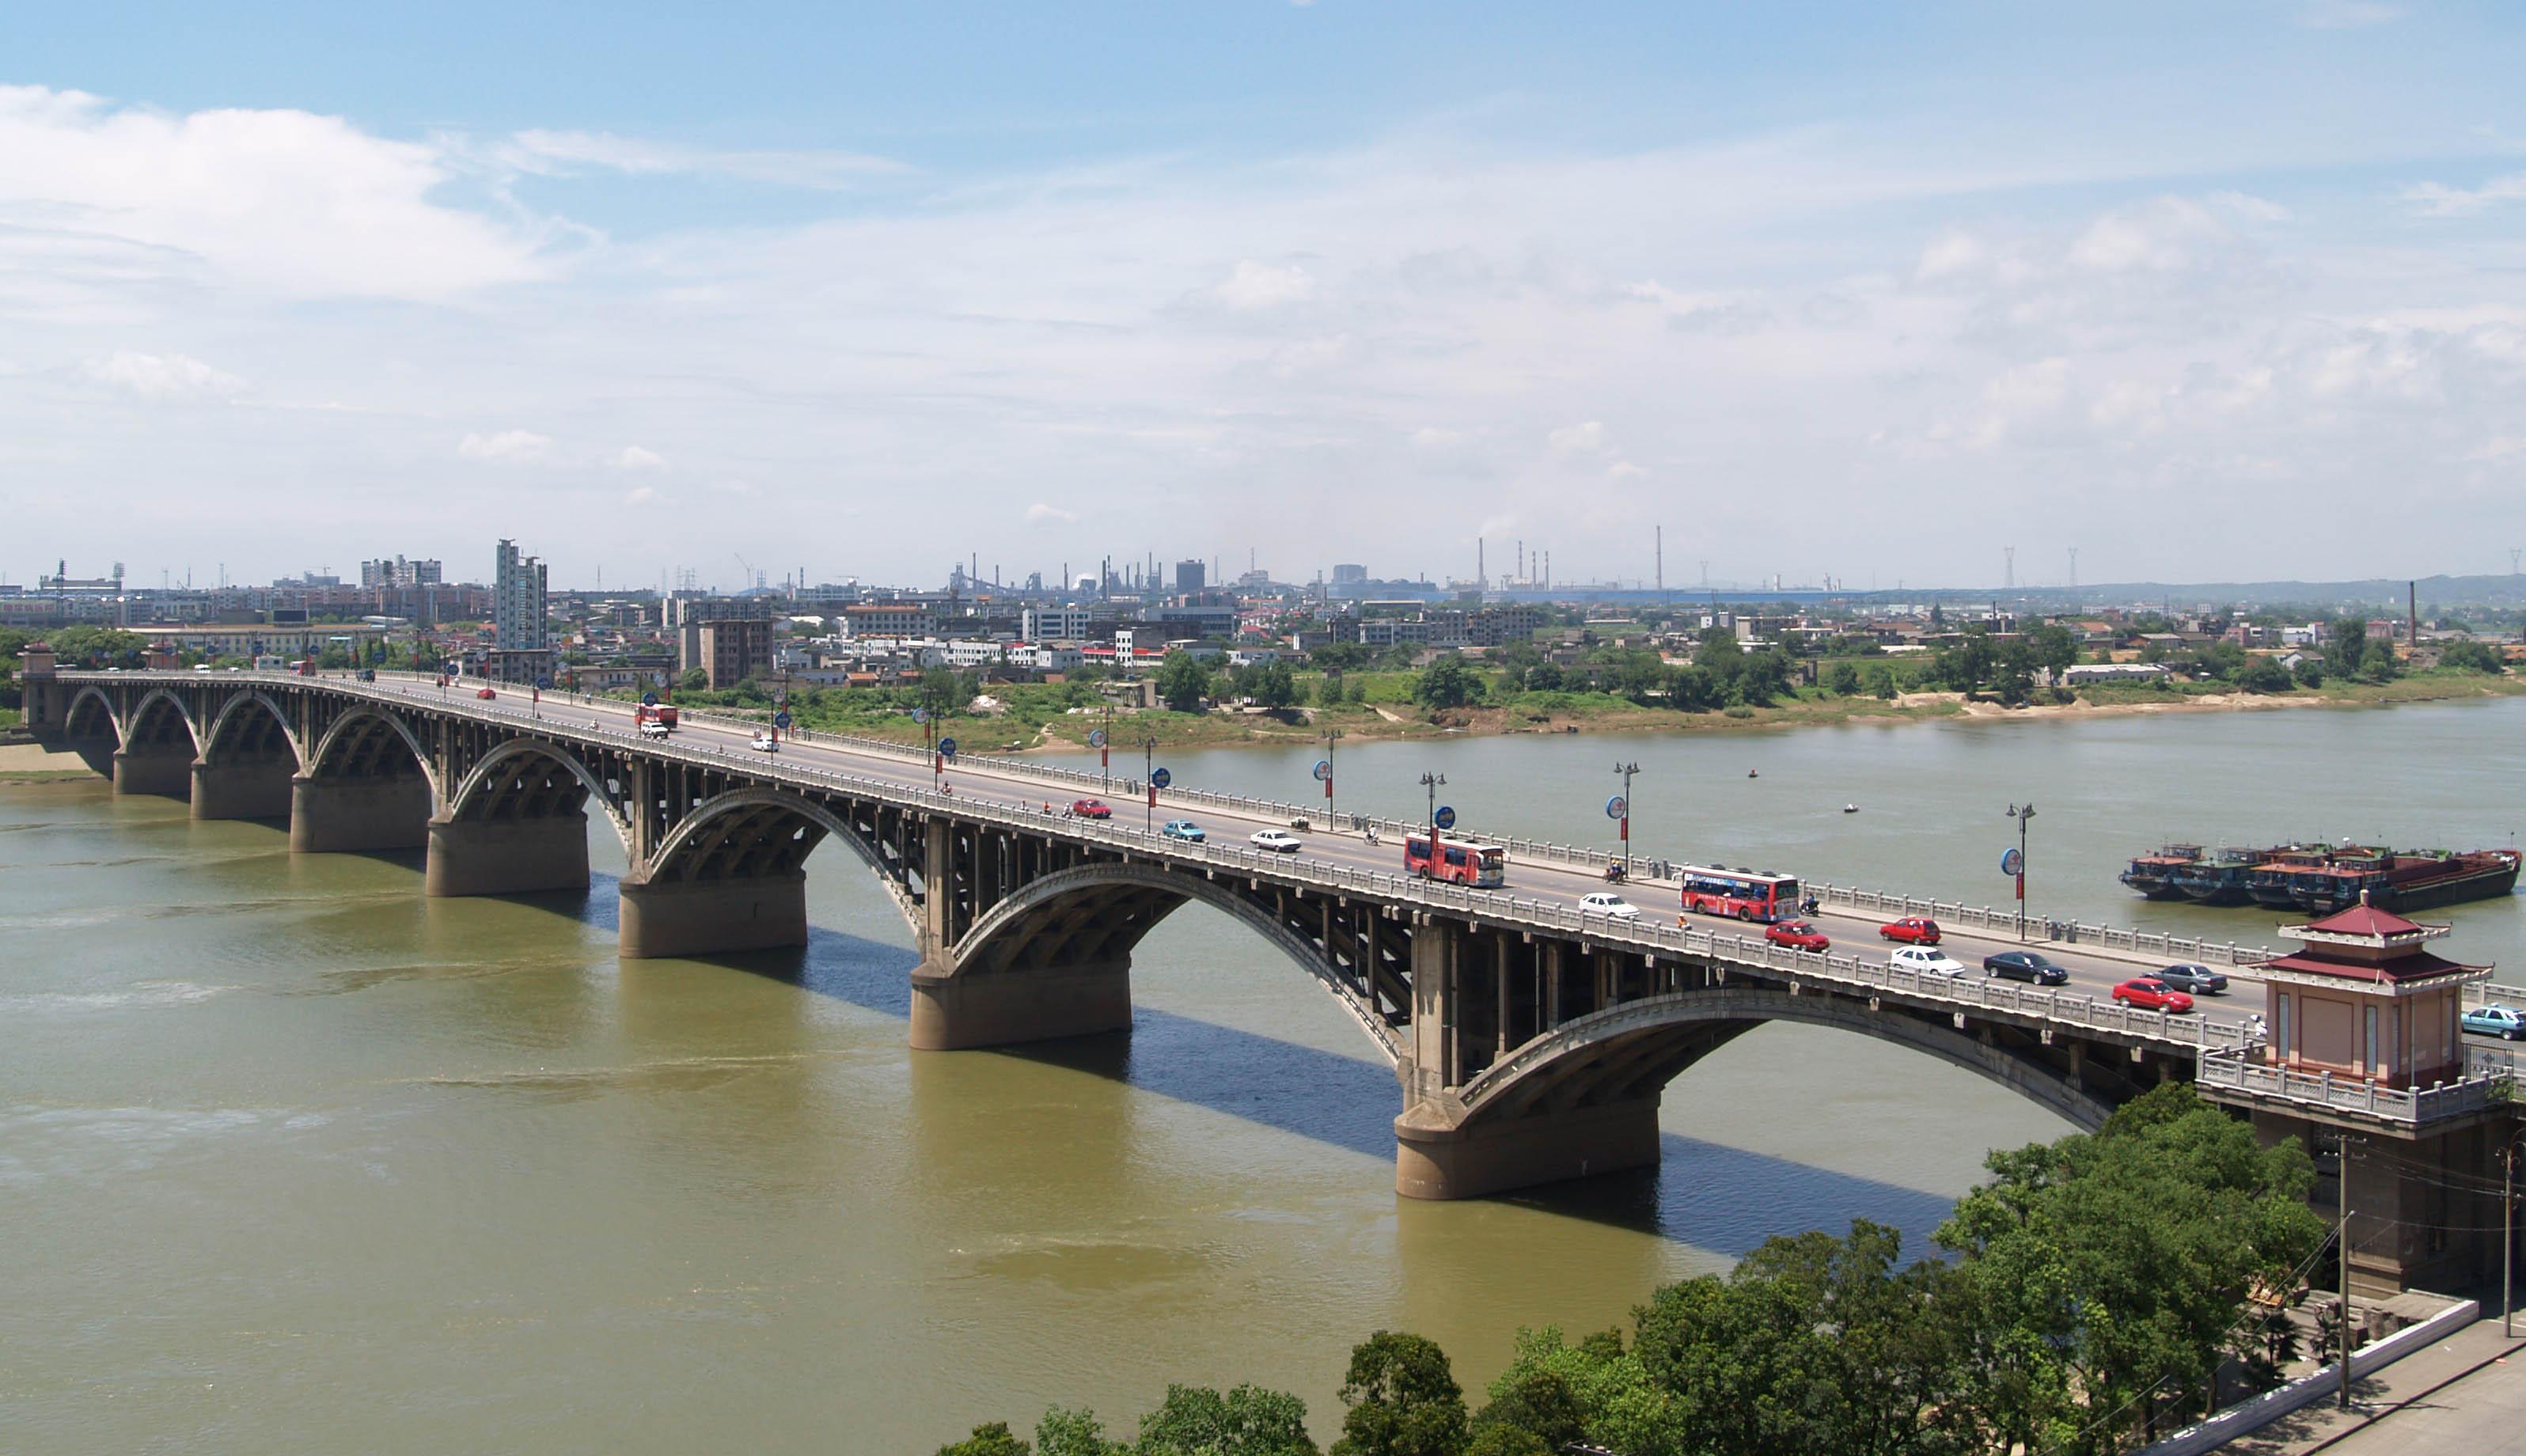 公司承建的湘潭一大桥工程被誉为“千里湘江第一桥”，比长沙市的第一座湘江大桥还早10年，一直以来是湘潭市标志性建筑